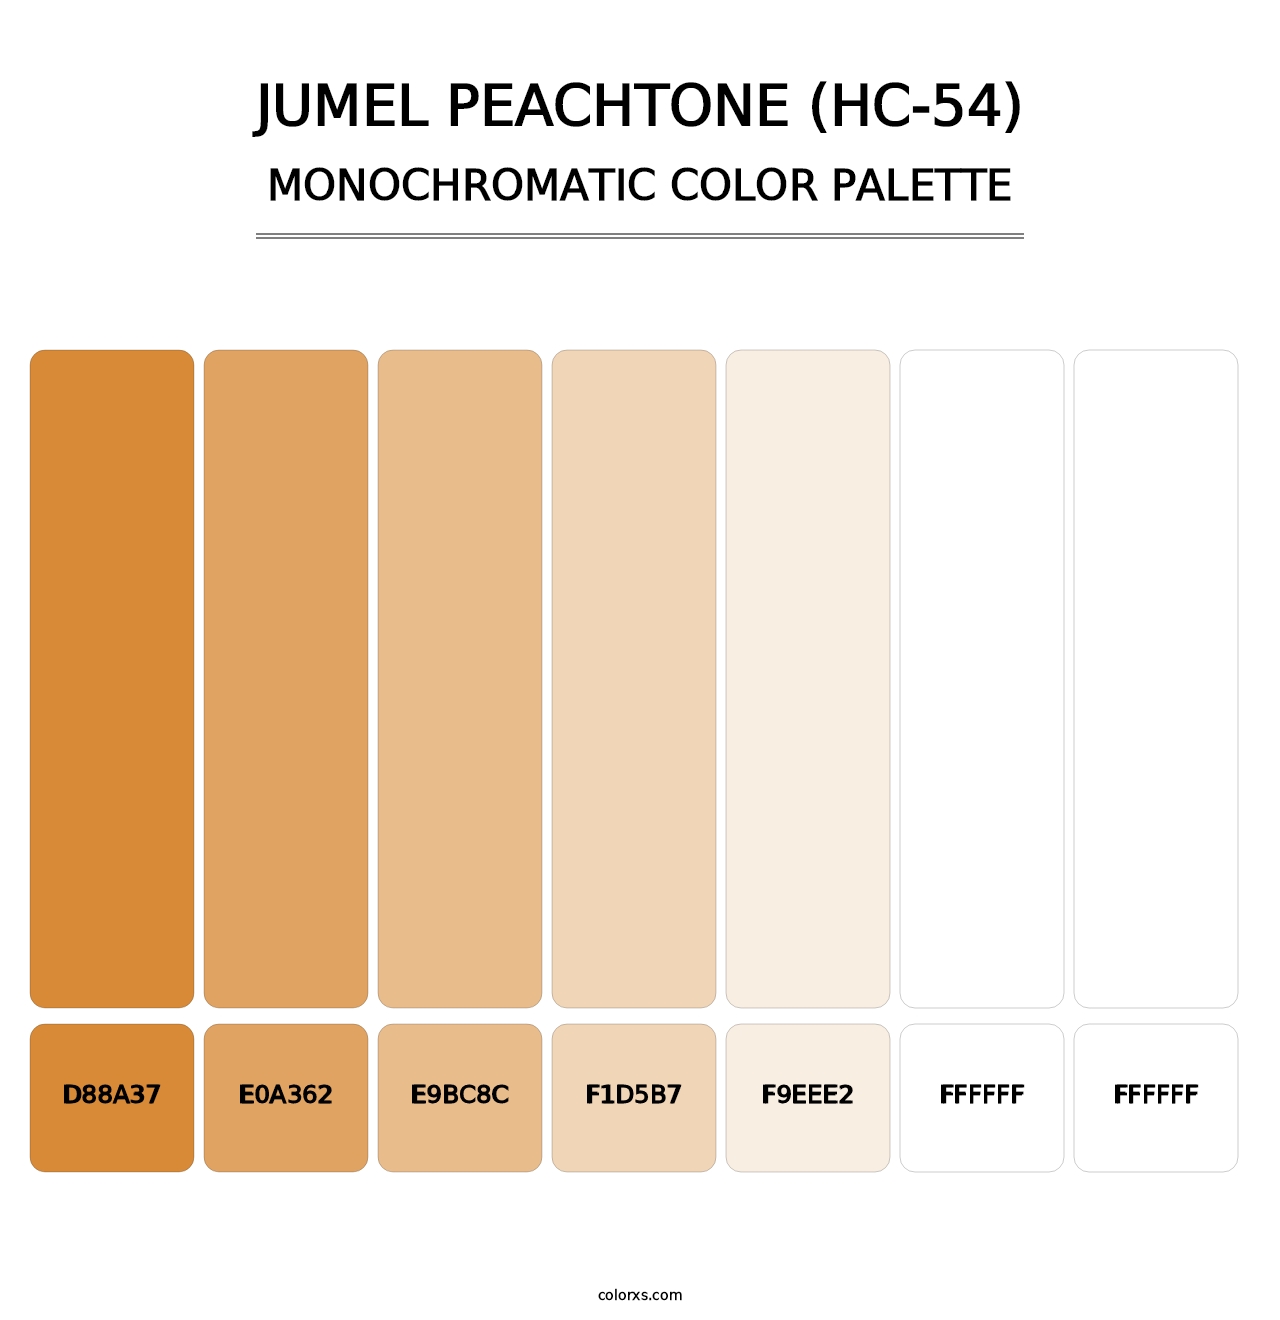 Jumel Peachtone (HC-54) - Monochromatic Color Palette